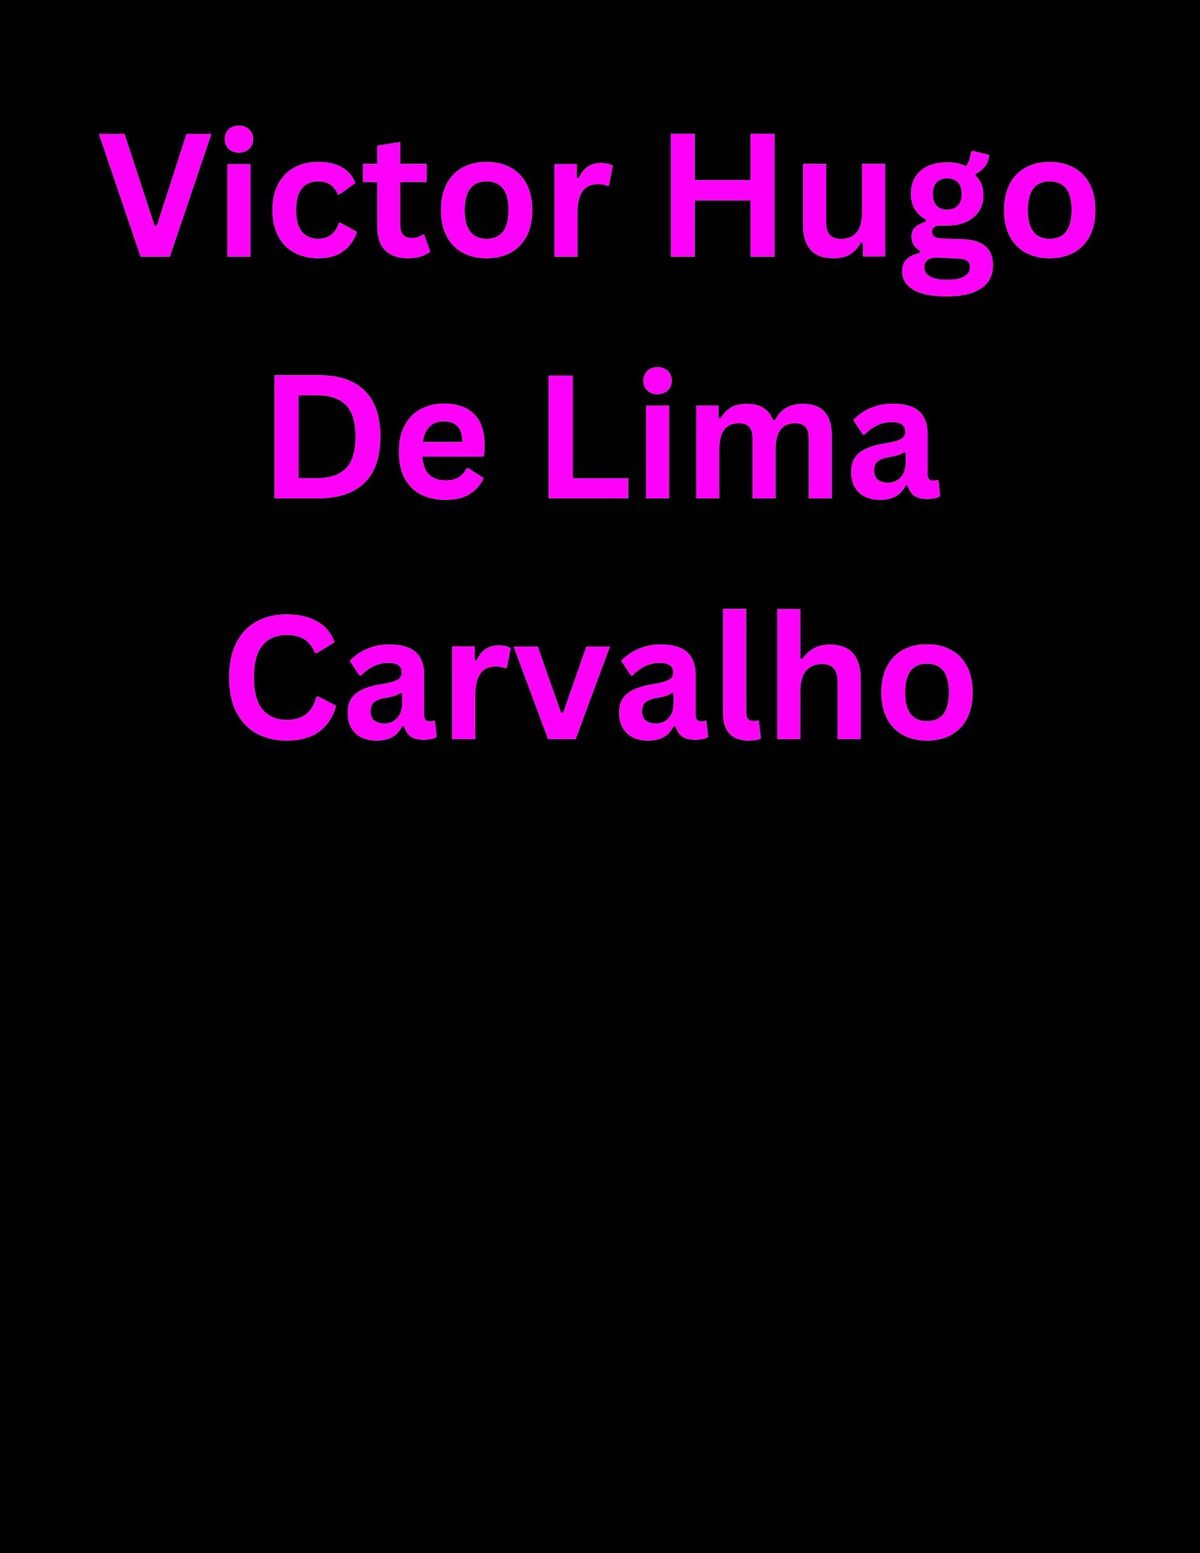 VICTOR HUGO DE LIMA SHOW